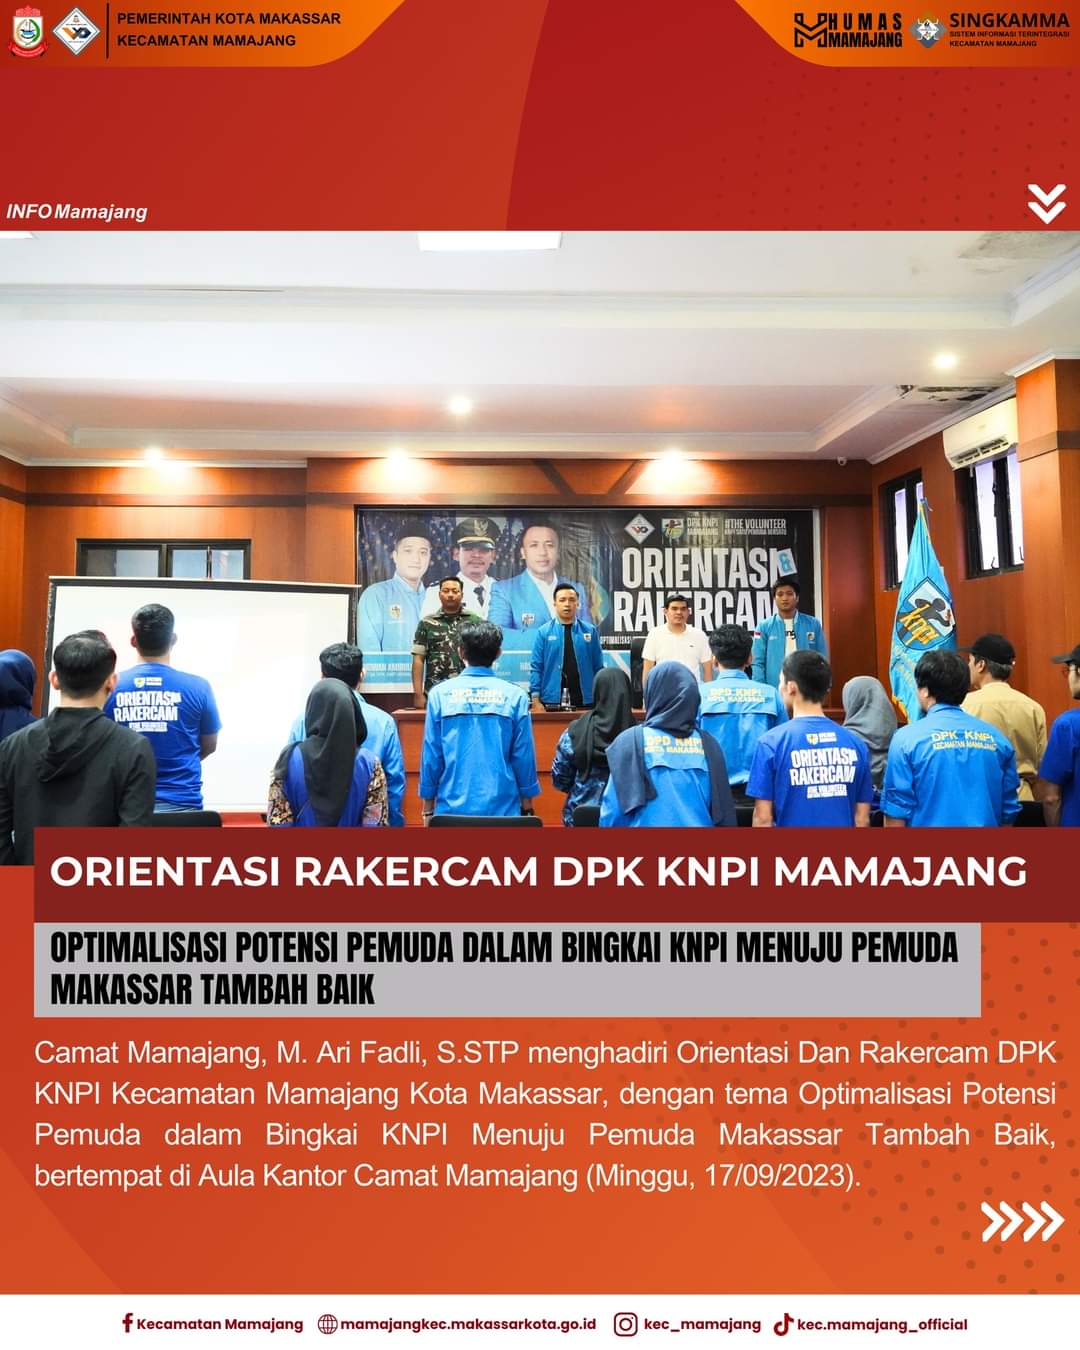 Gambar Camat Mamajang M. Ari Fadli S.STP Menghadiri Orientasi Dan Rakercam DPK KNPI Kecamatan Mamajang